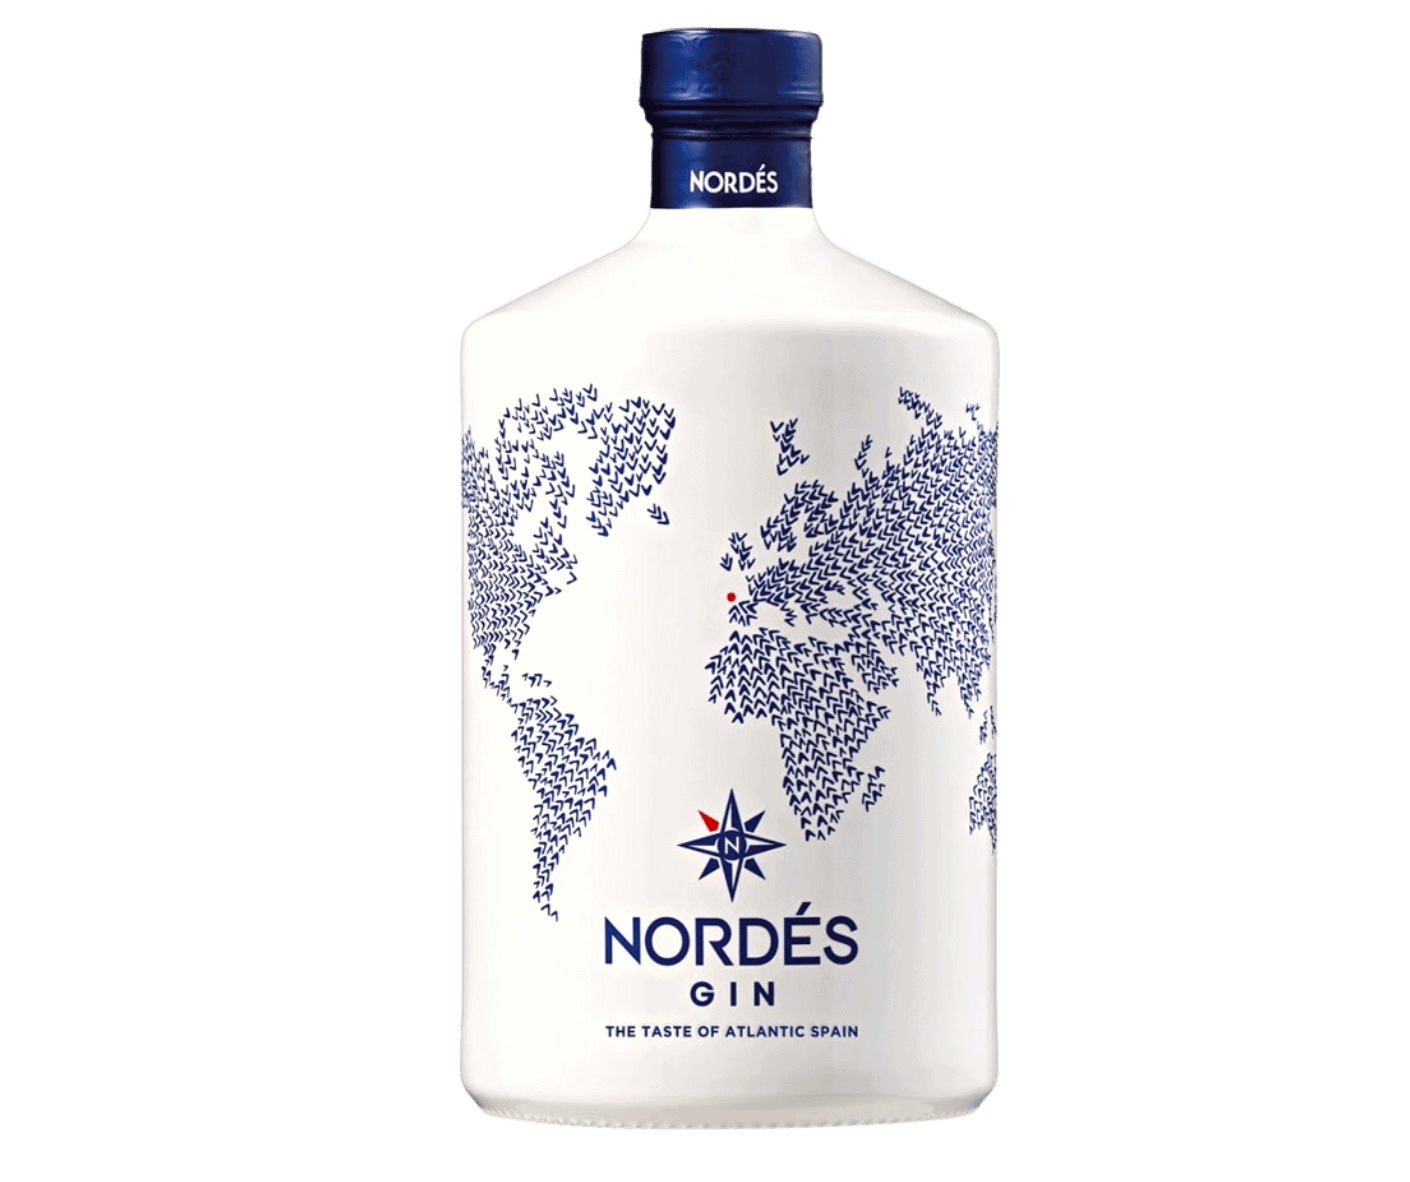 Nordes Gin + Nordes Glass